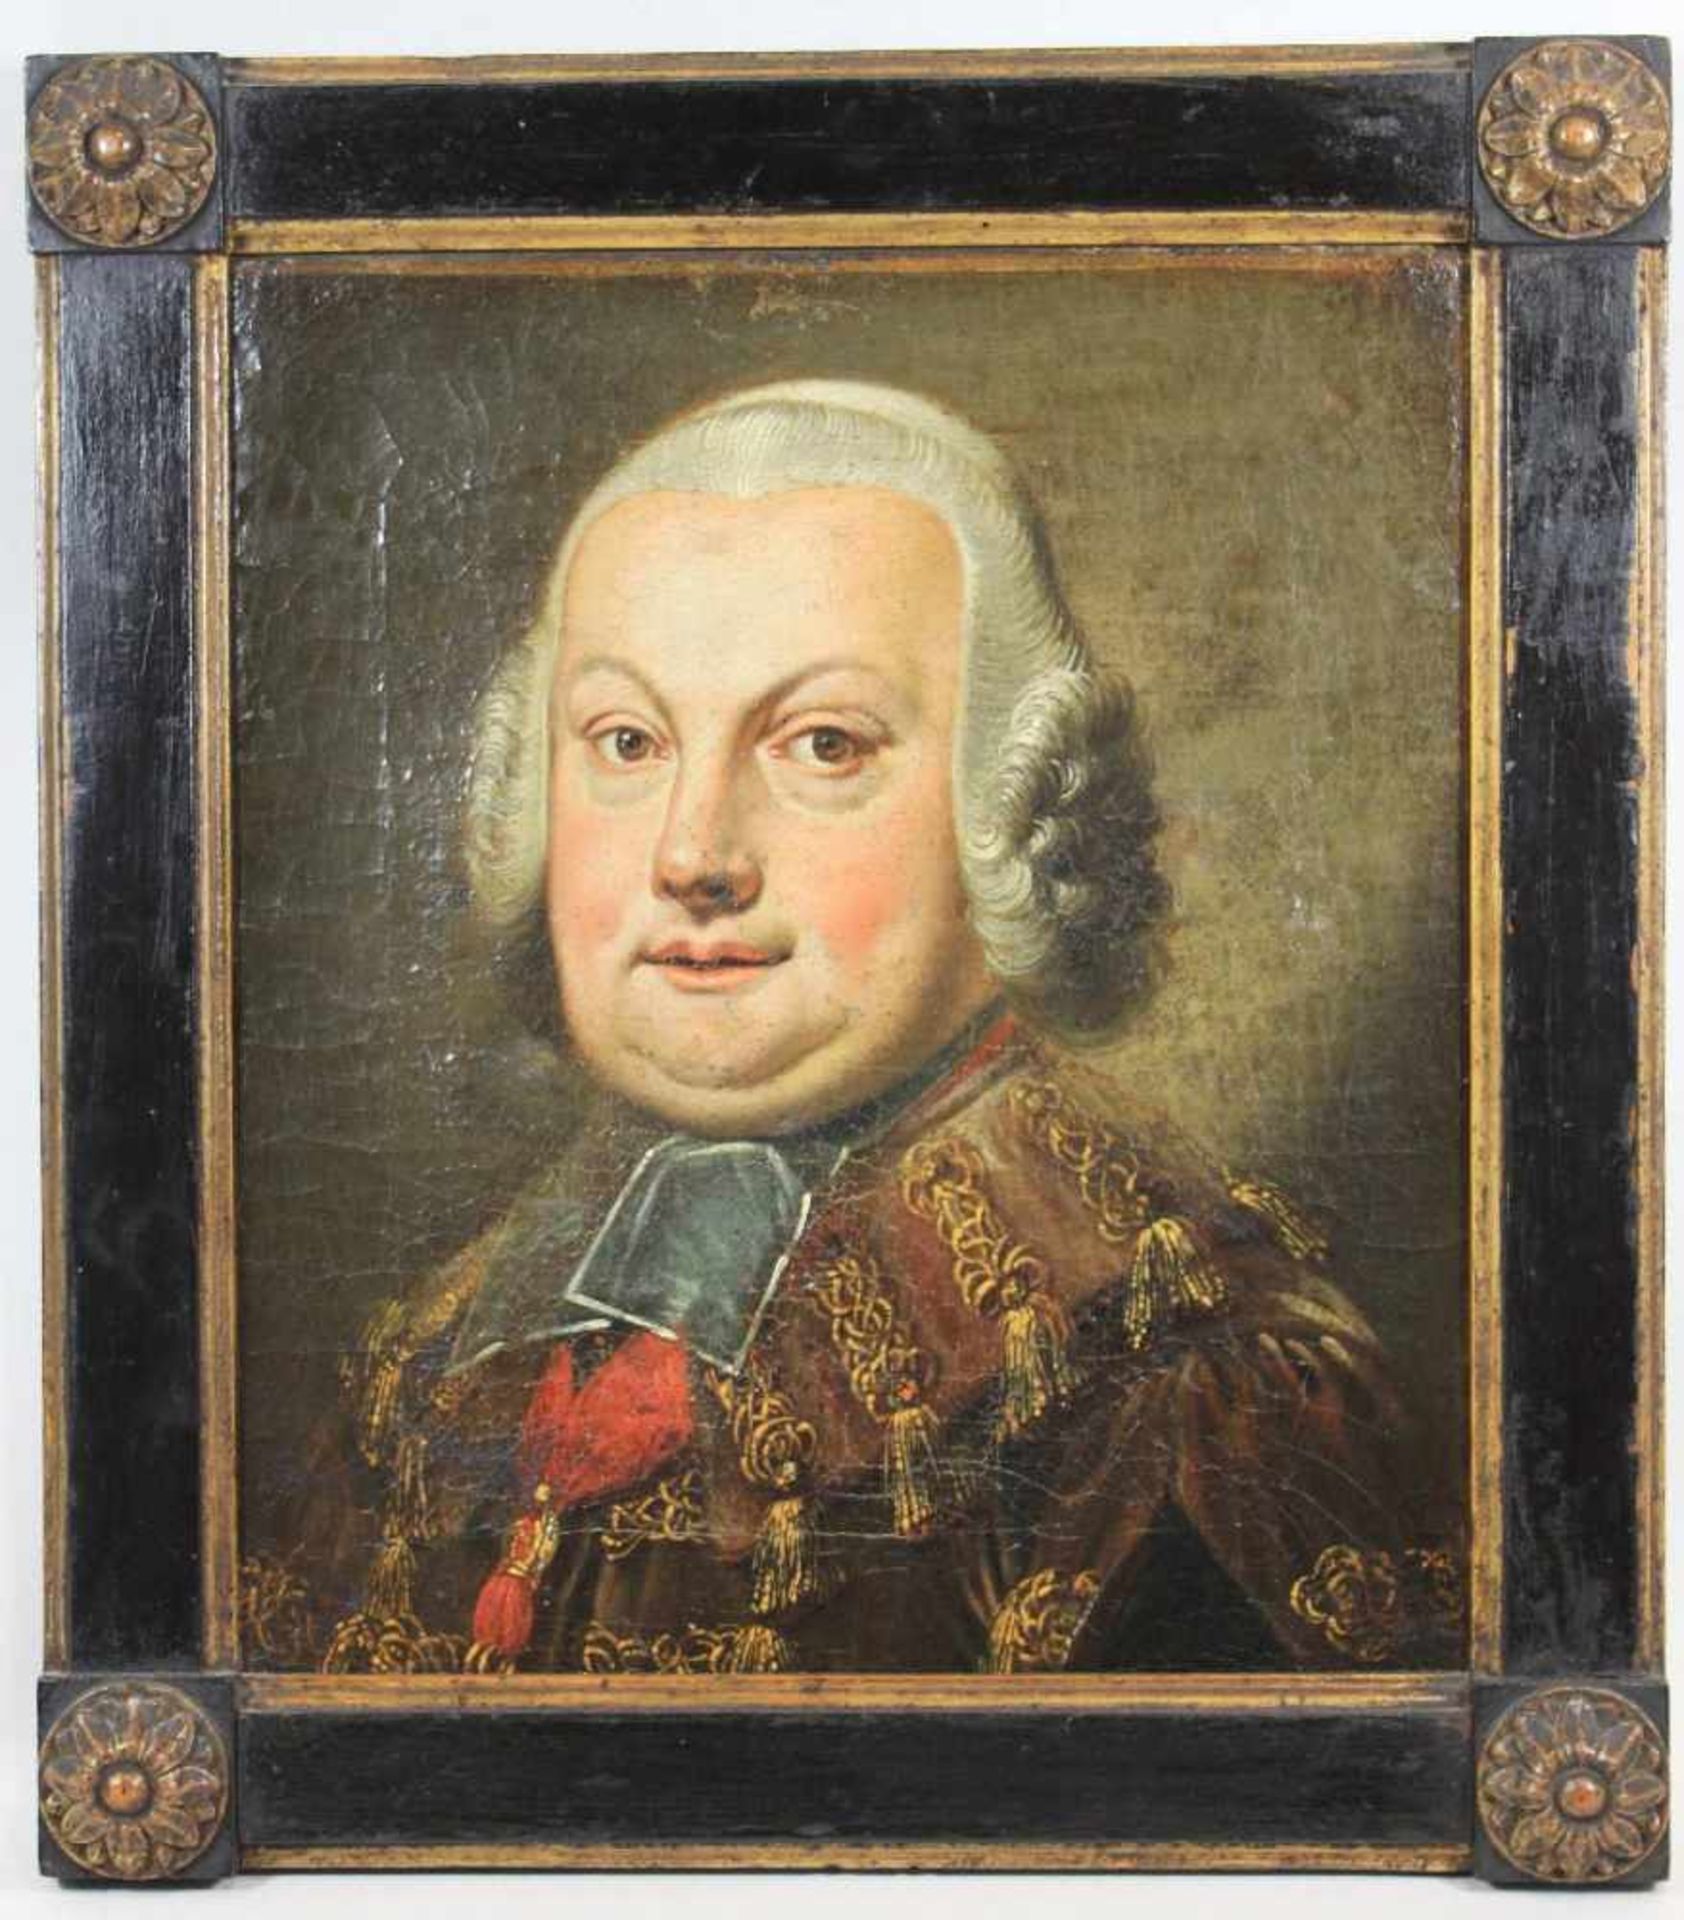 Porträt eines Mannes, 18 Jh., Öl a. Lwd, rückseitig auf dem Rahmen altes Klebeetikett: Ber. 43. Bild - Bild 2 aus 2